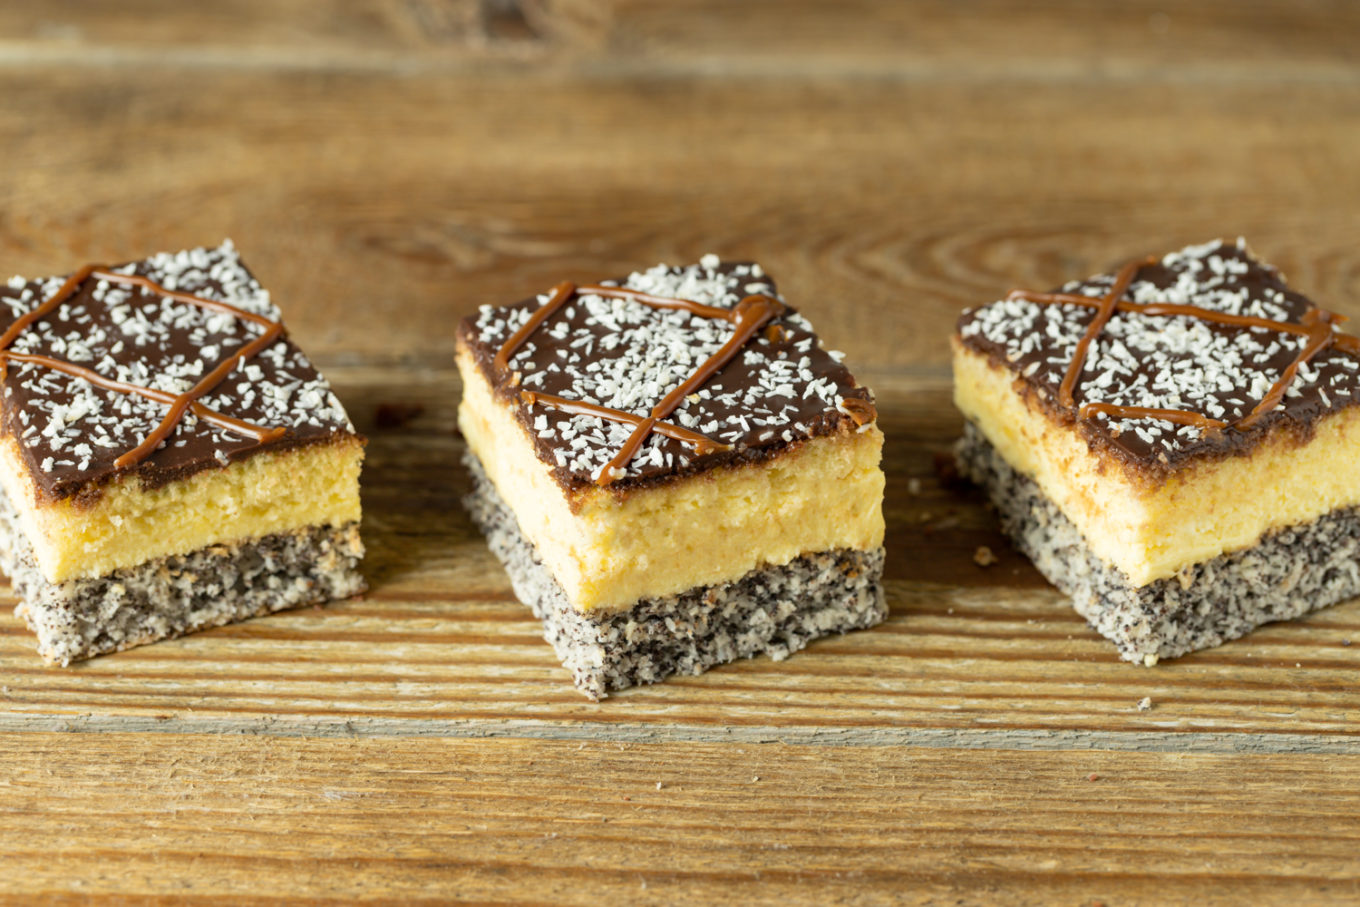 makowiec-królewski-pijak Cukiernia Jacek Placek to synonim smaku domowych ciast z naturalnych produktów.